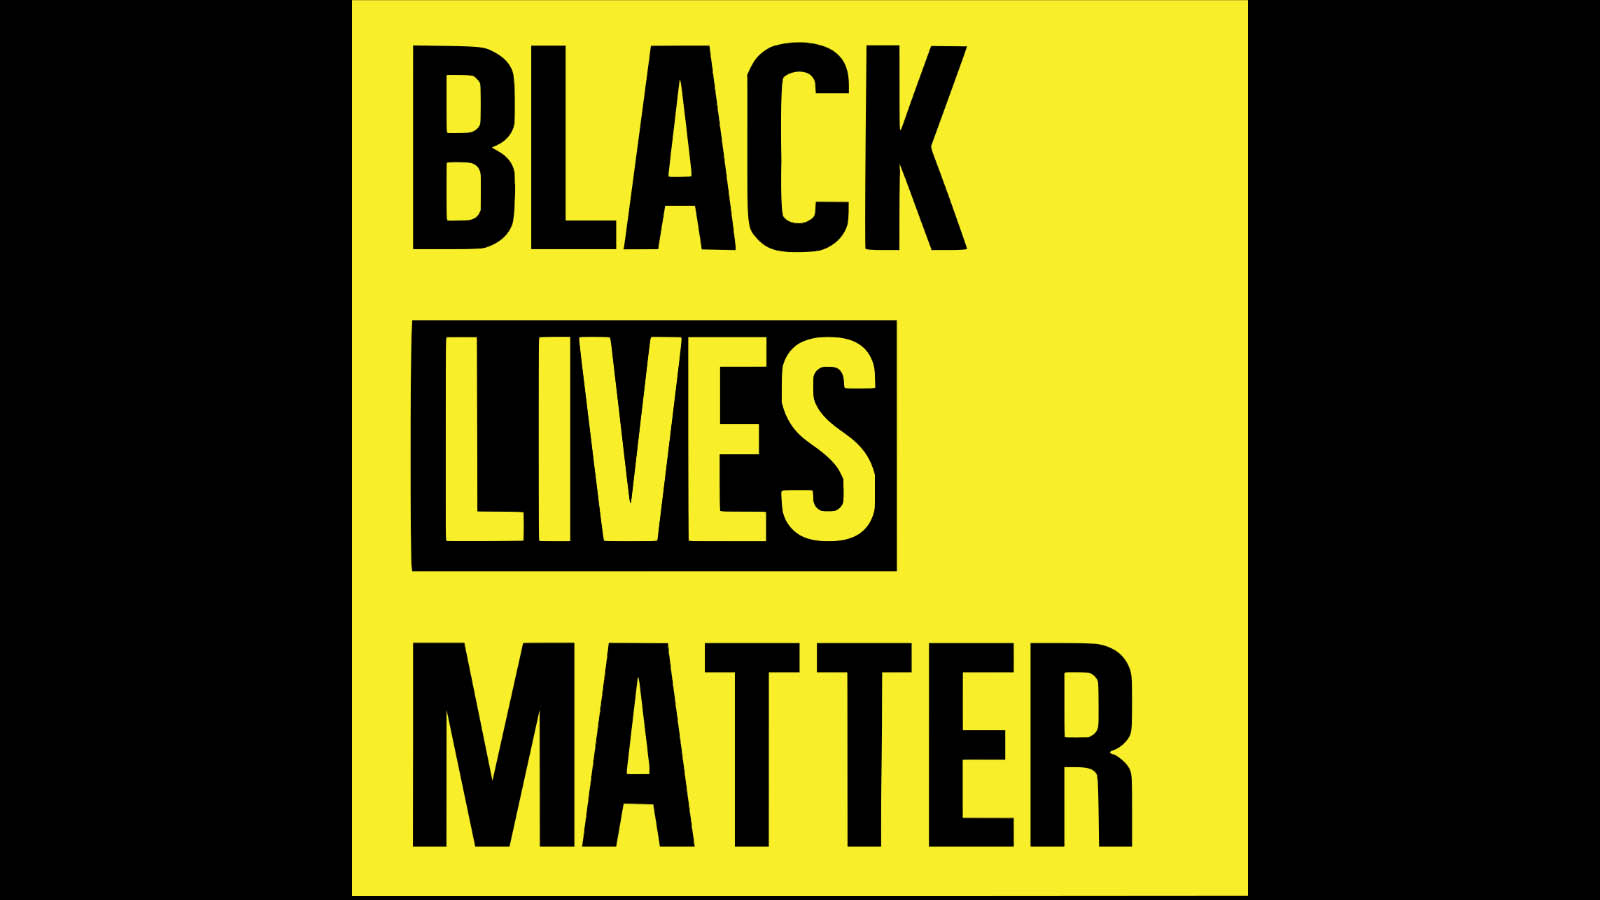 Black Lives Matter to me